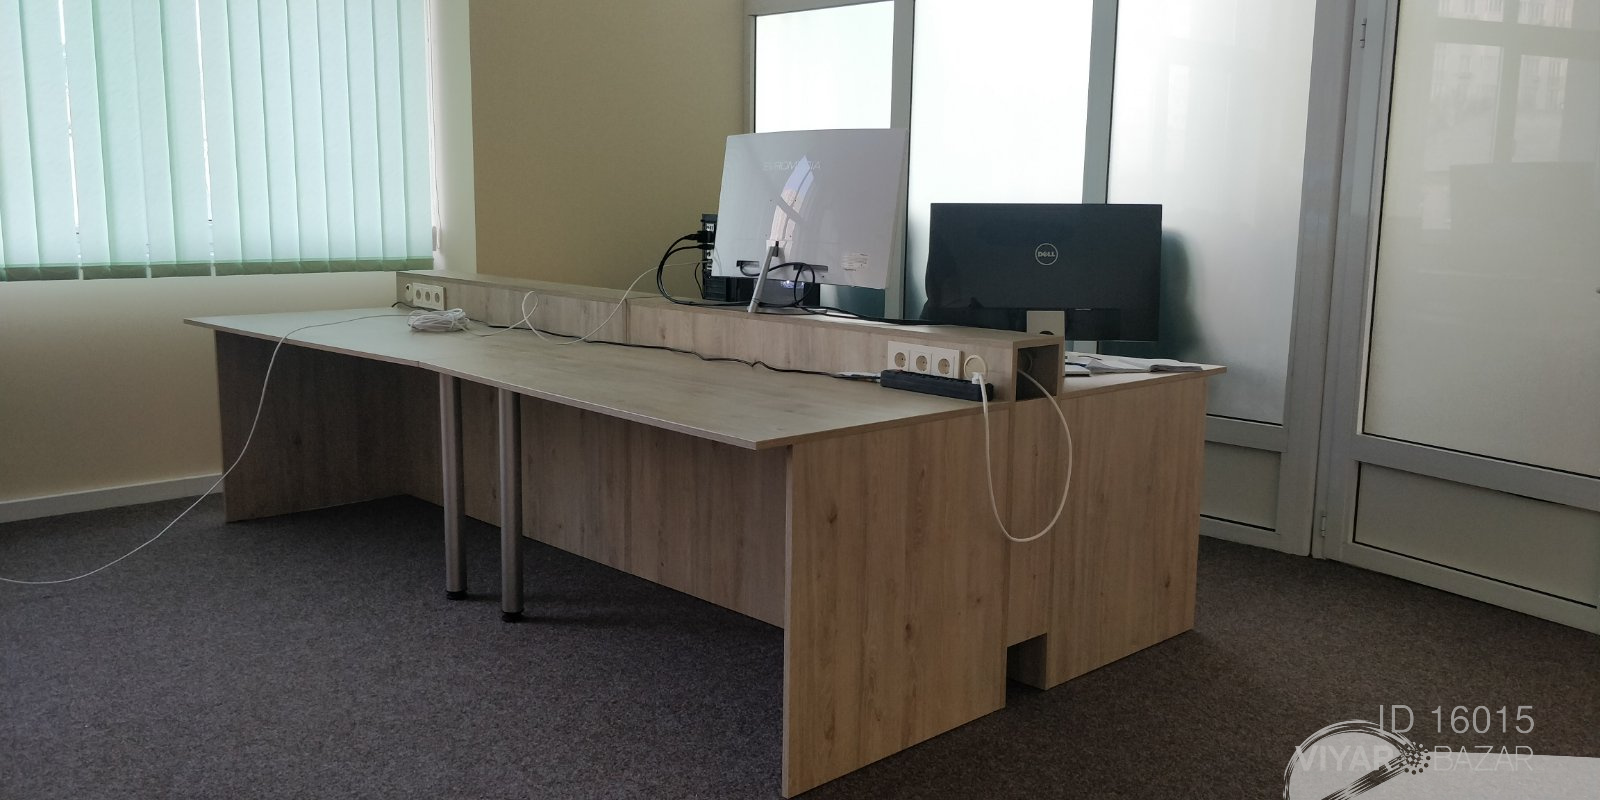 Компьютерные столы для офиса.